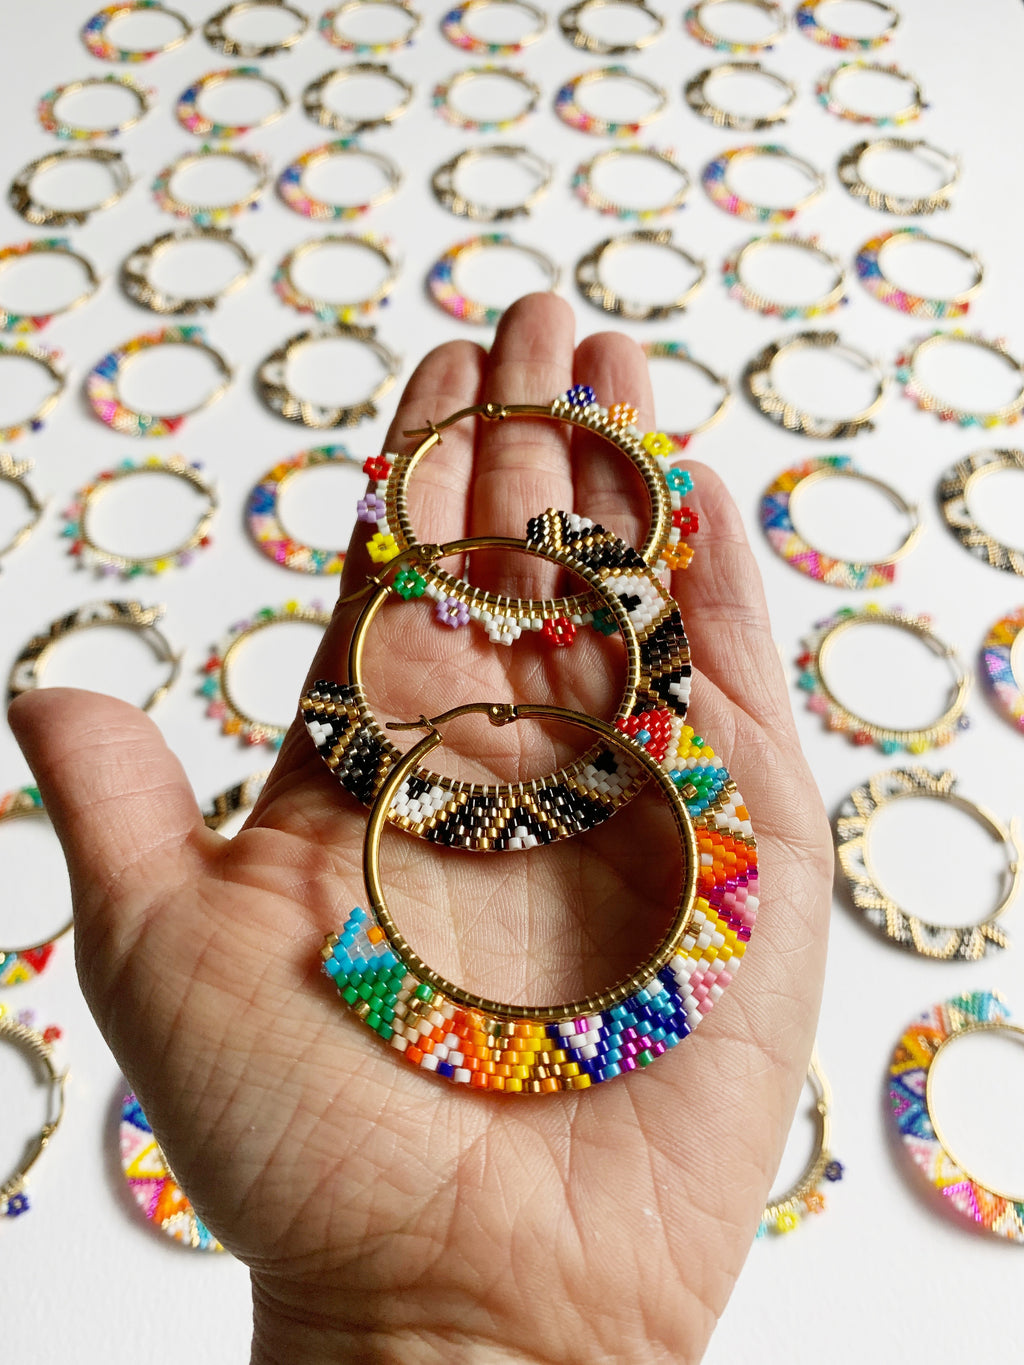 DIY Word Bracelet Kits – Hey Grl Hey Jewelry